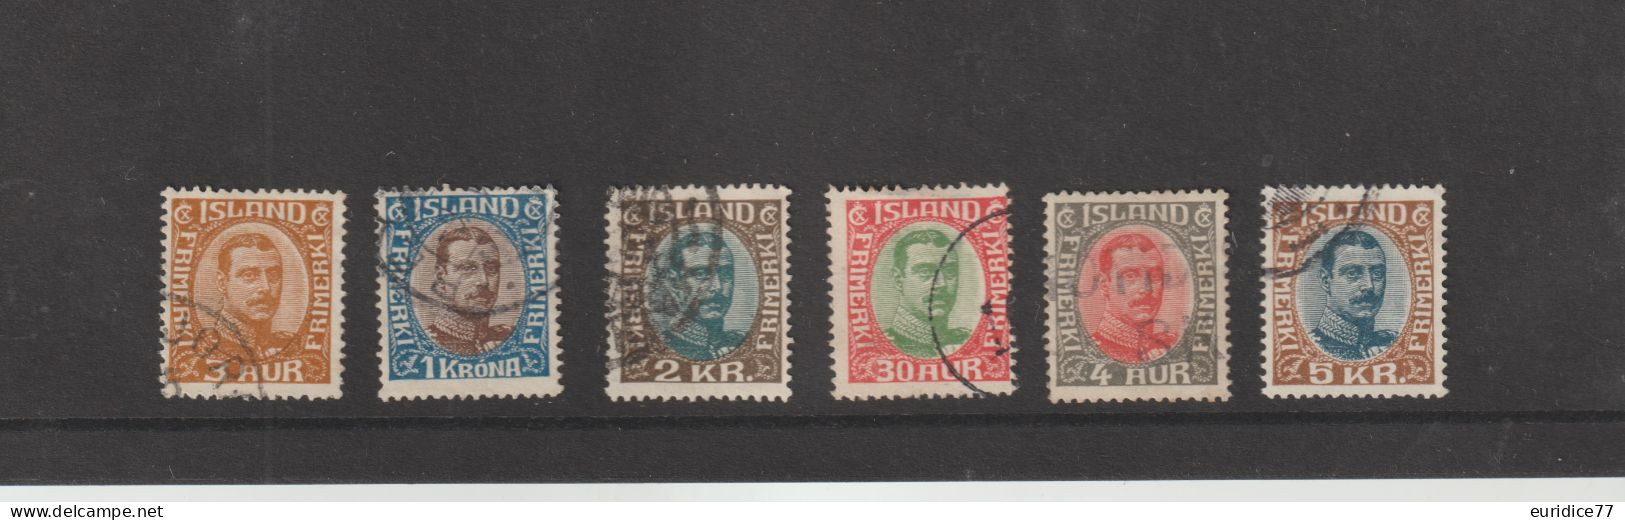 Islande 1920 - Yvert 83,84,92,95,96 Oblitere - Oblitérés